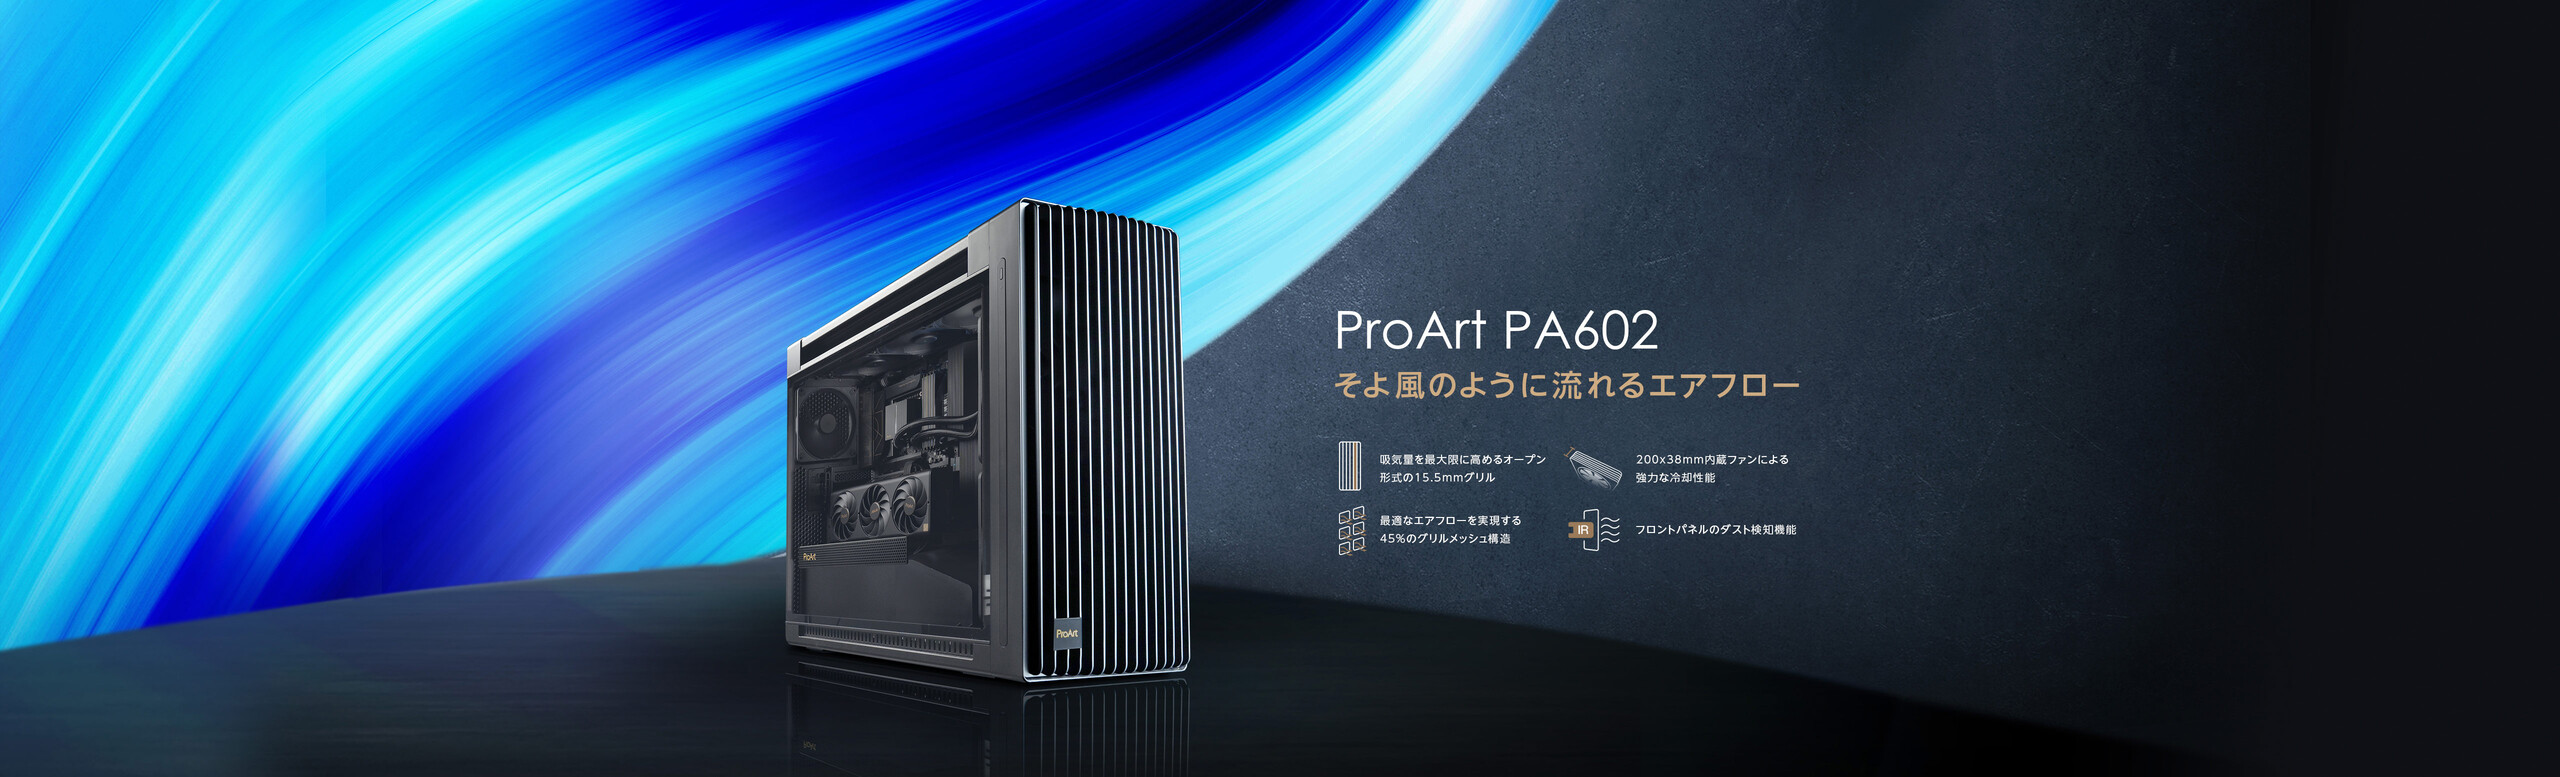 ProArt PA602